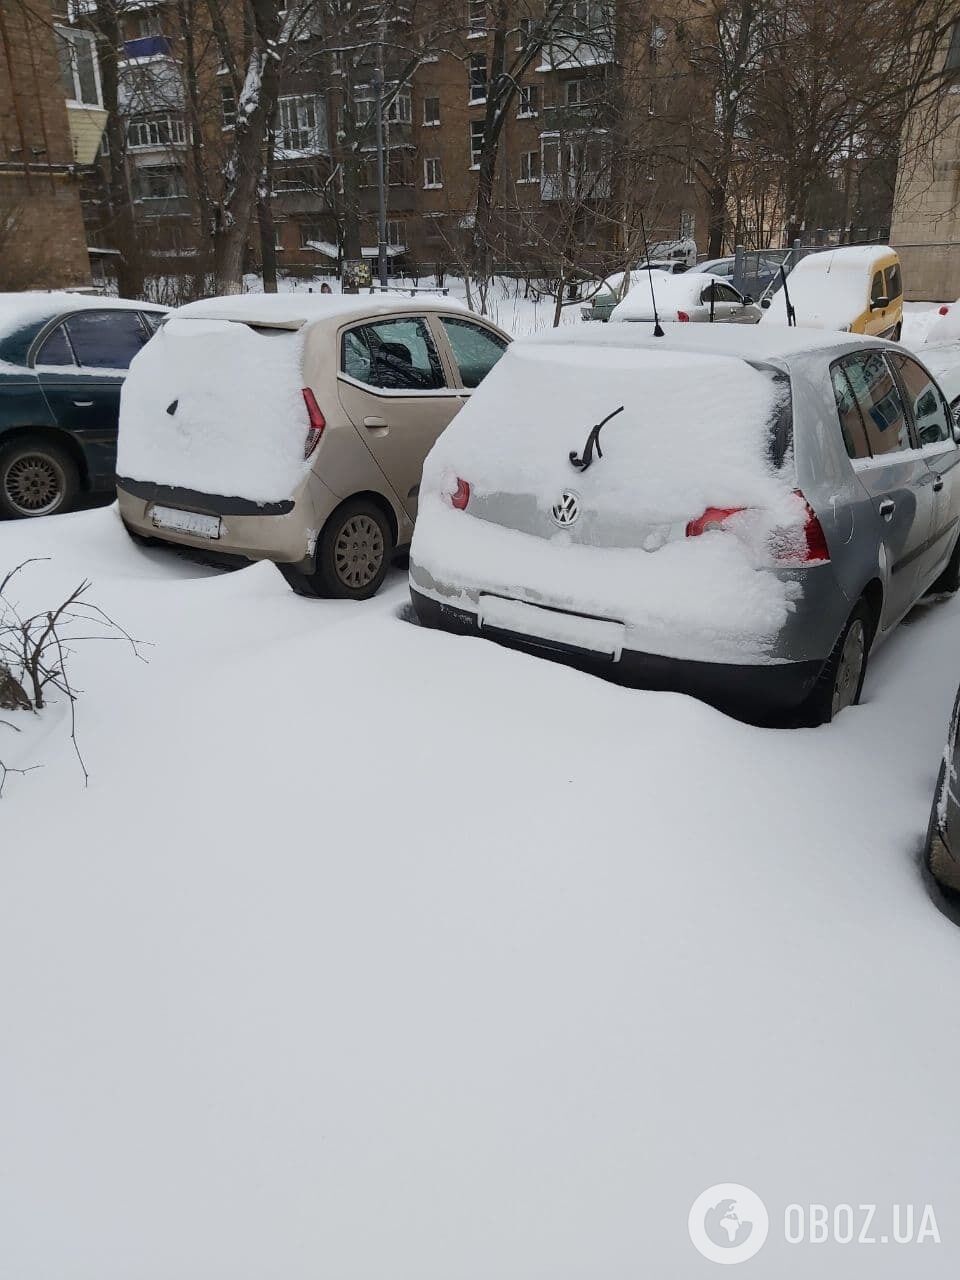 Коммунальщикам мешают убирать снег припаркованные автомобили.